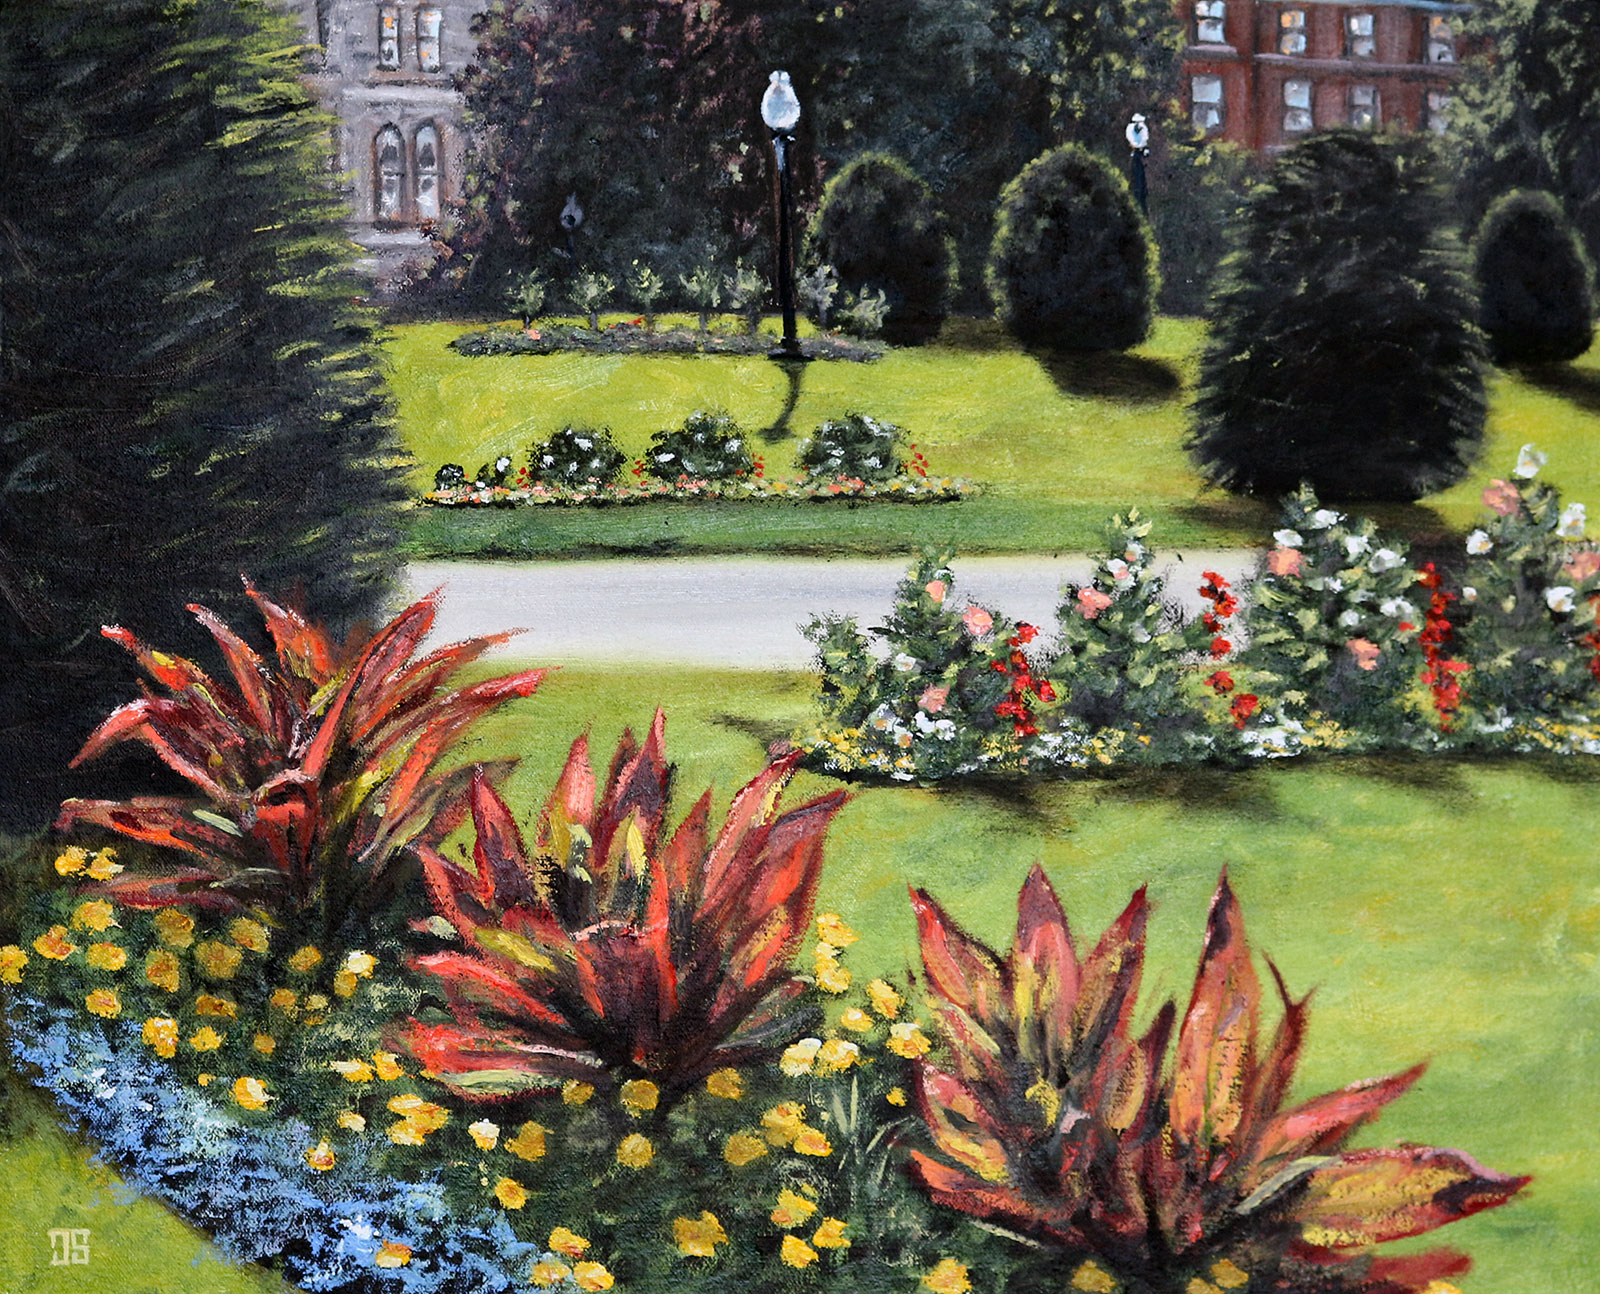 Oil painting "Flowers in Boston Public Garden" by Jeffrey Dale Starr